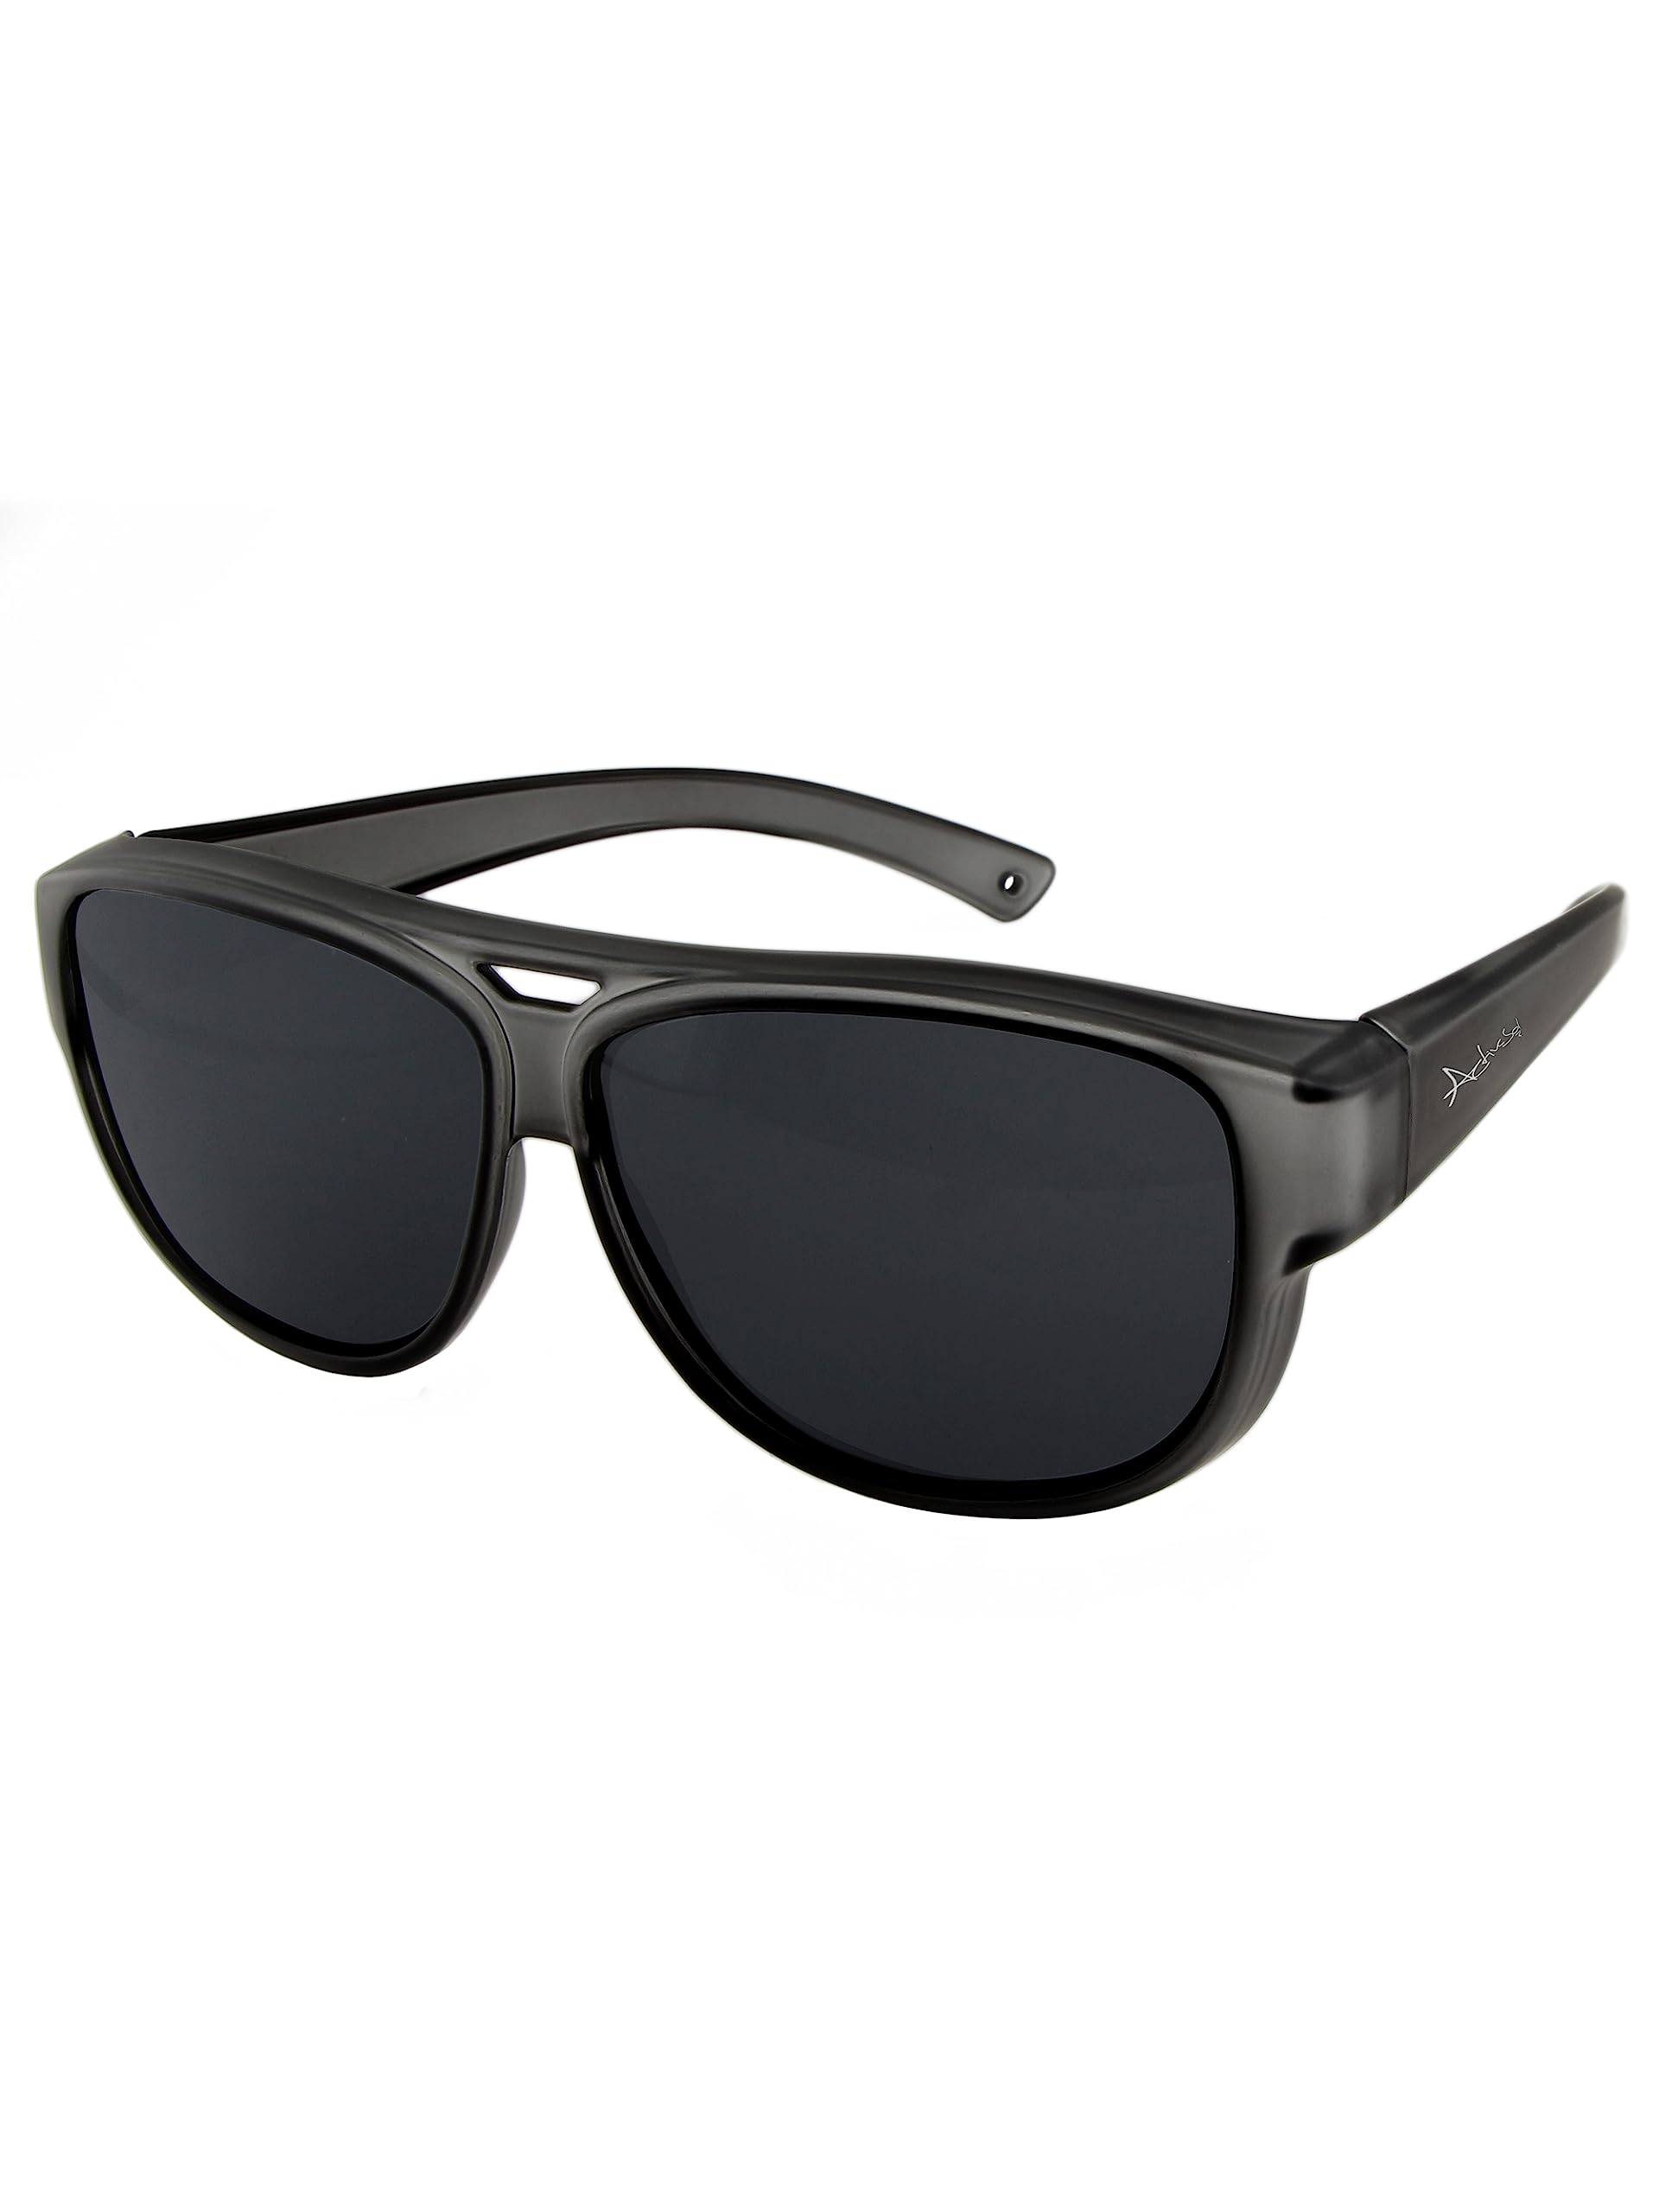 ActiveSol Überzieh-Sonnenbrille Kategorie 4, für Brillenträger, extra dunkel, polarisiert